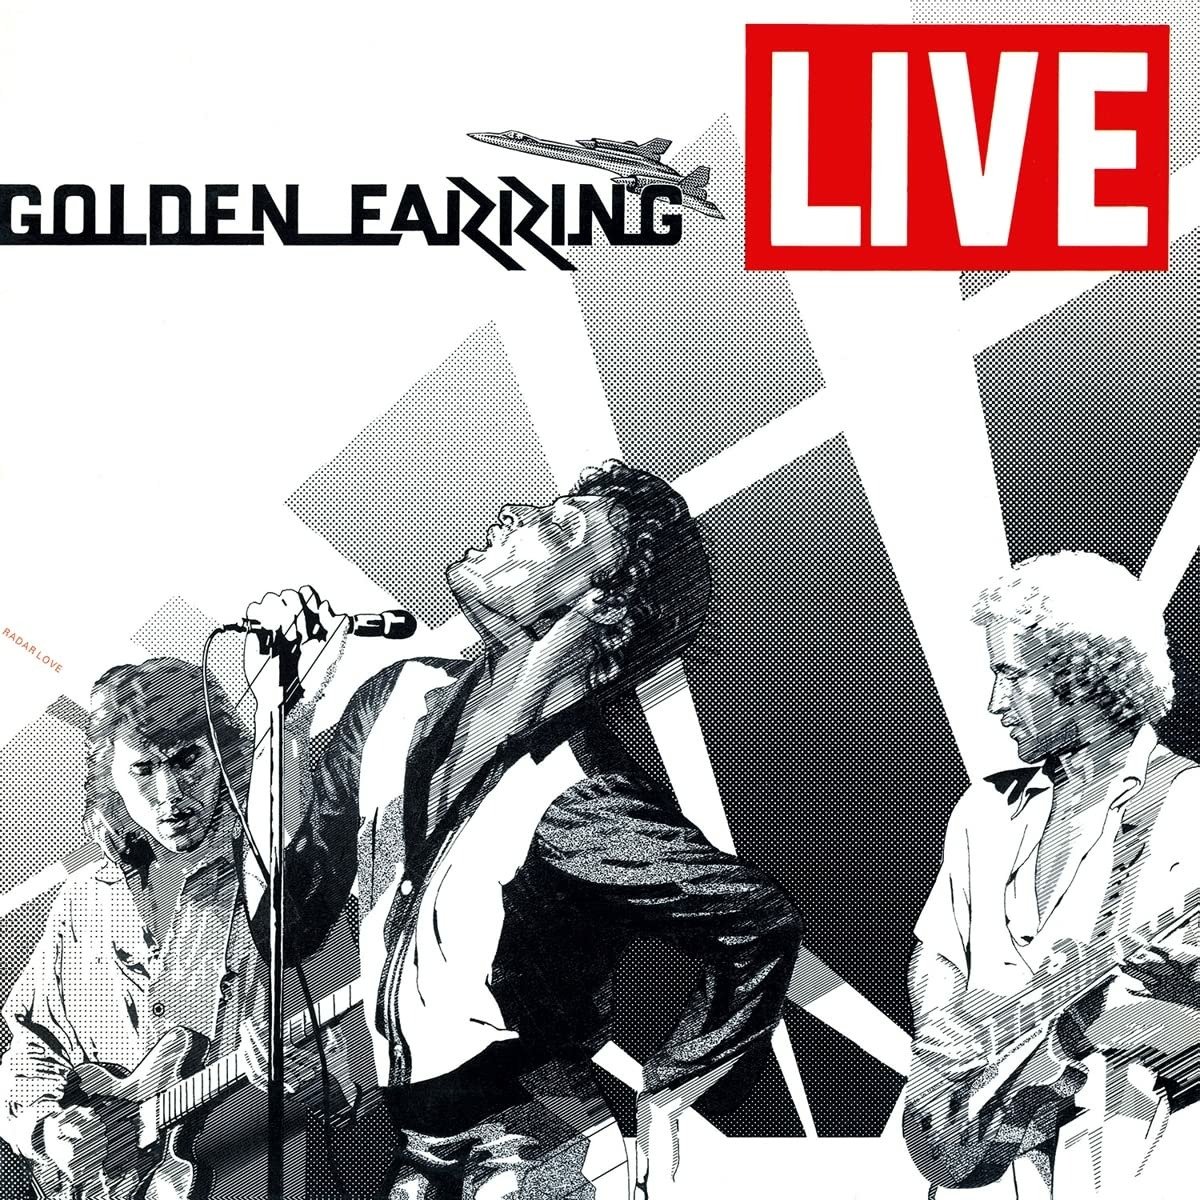 GOLDEN EARRING - LIVE, Vinyl